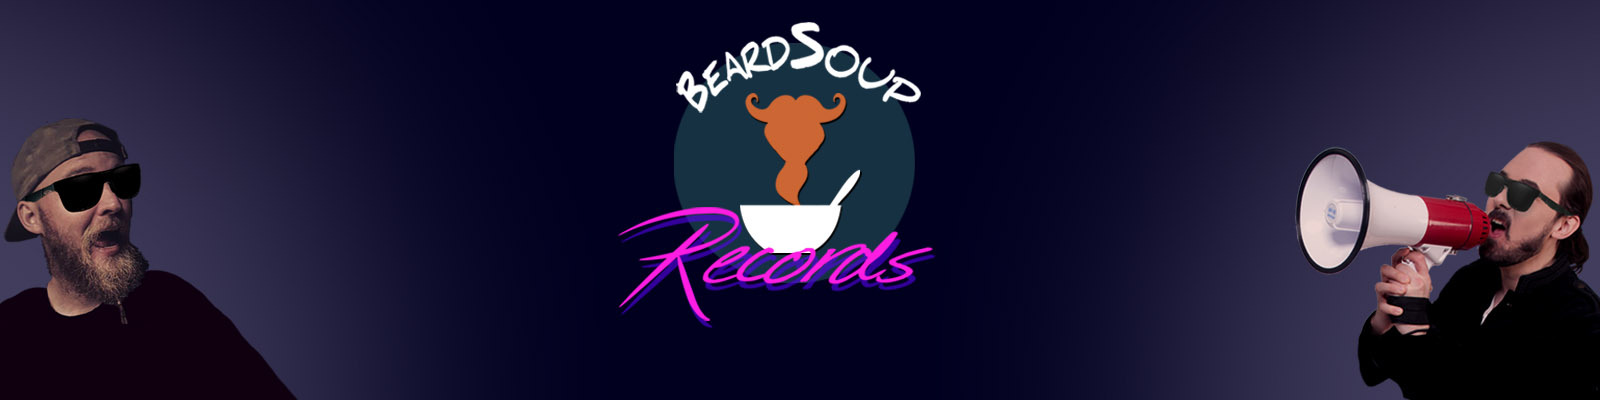 Beardsoup Records